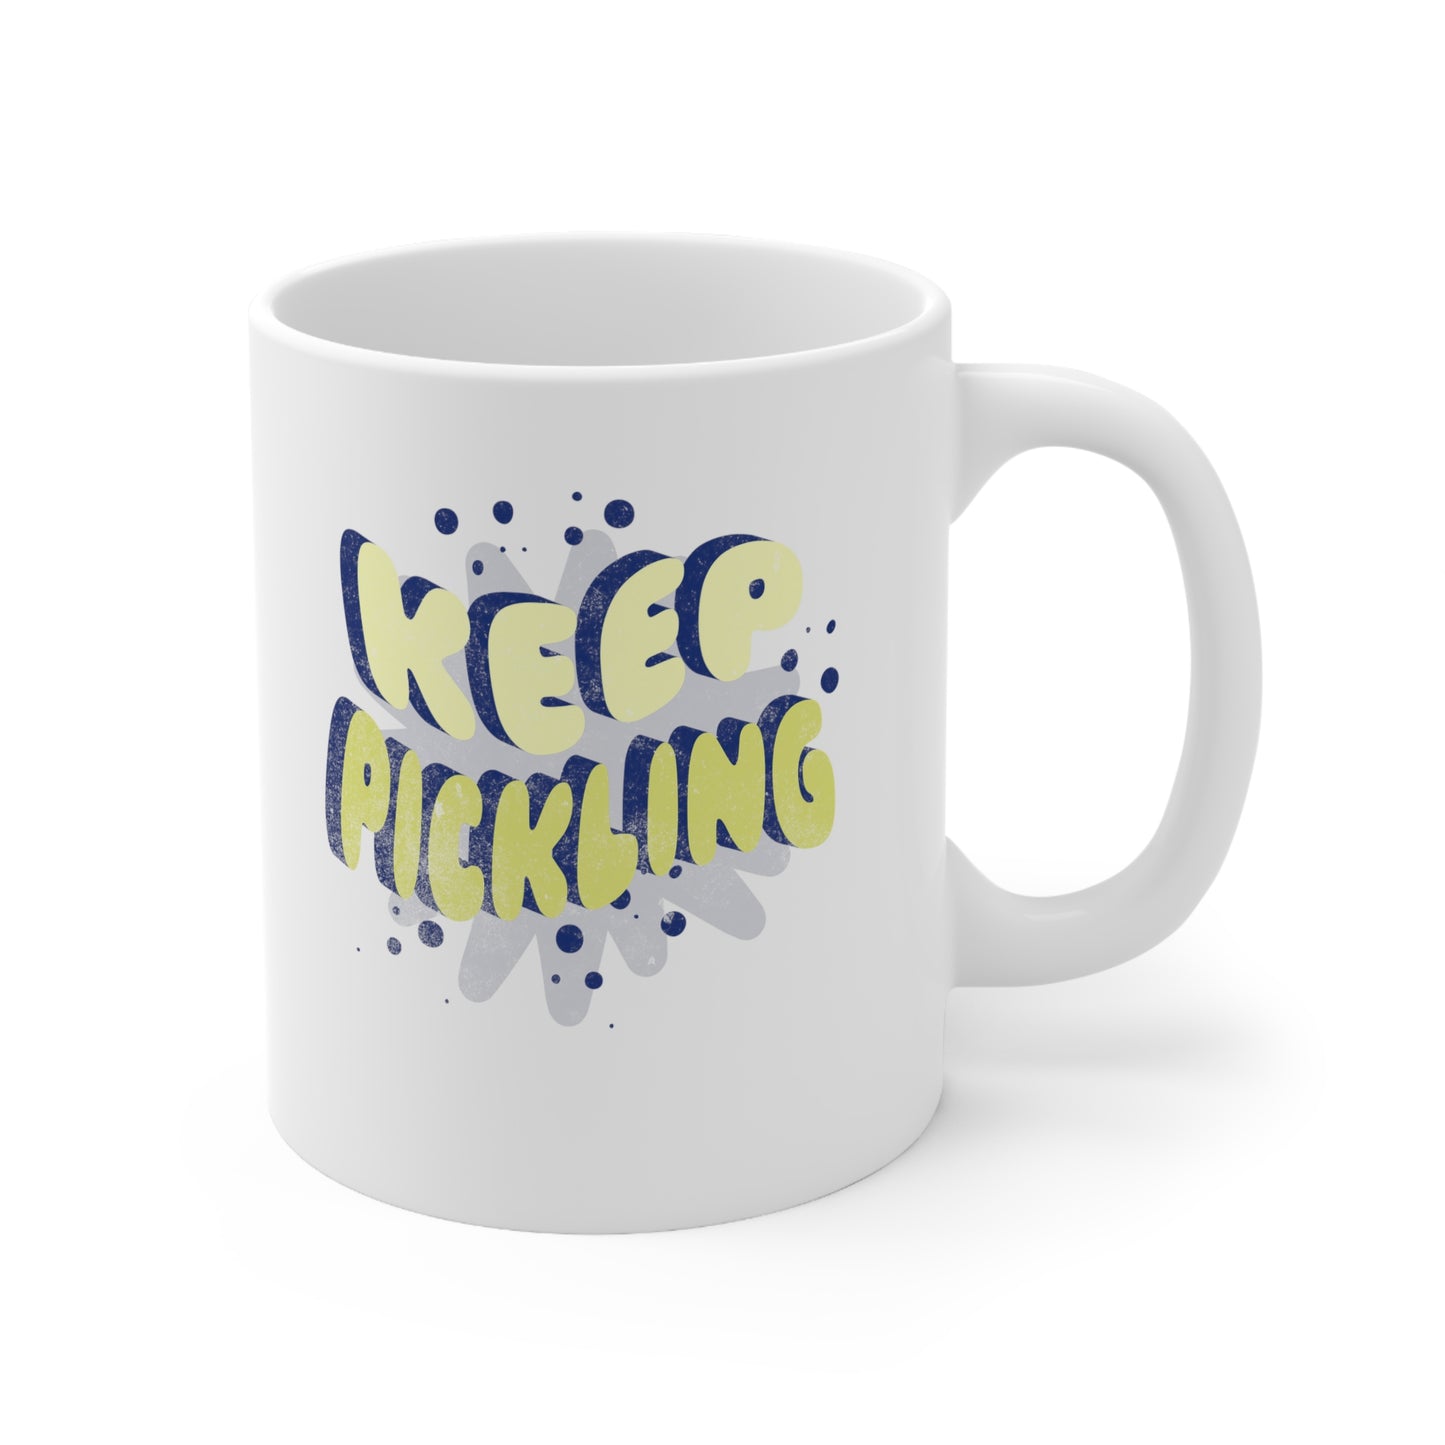 Pickleball Coffee Mug: Keep Pickling